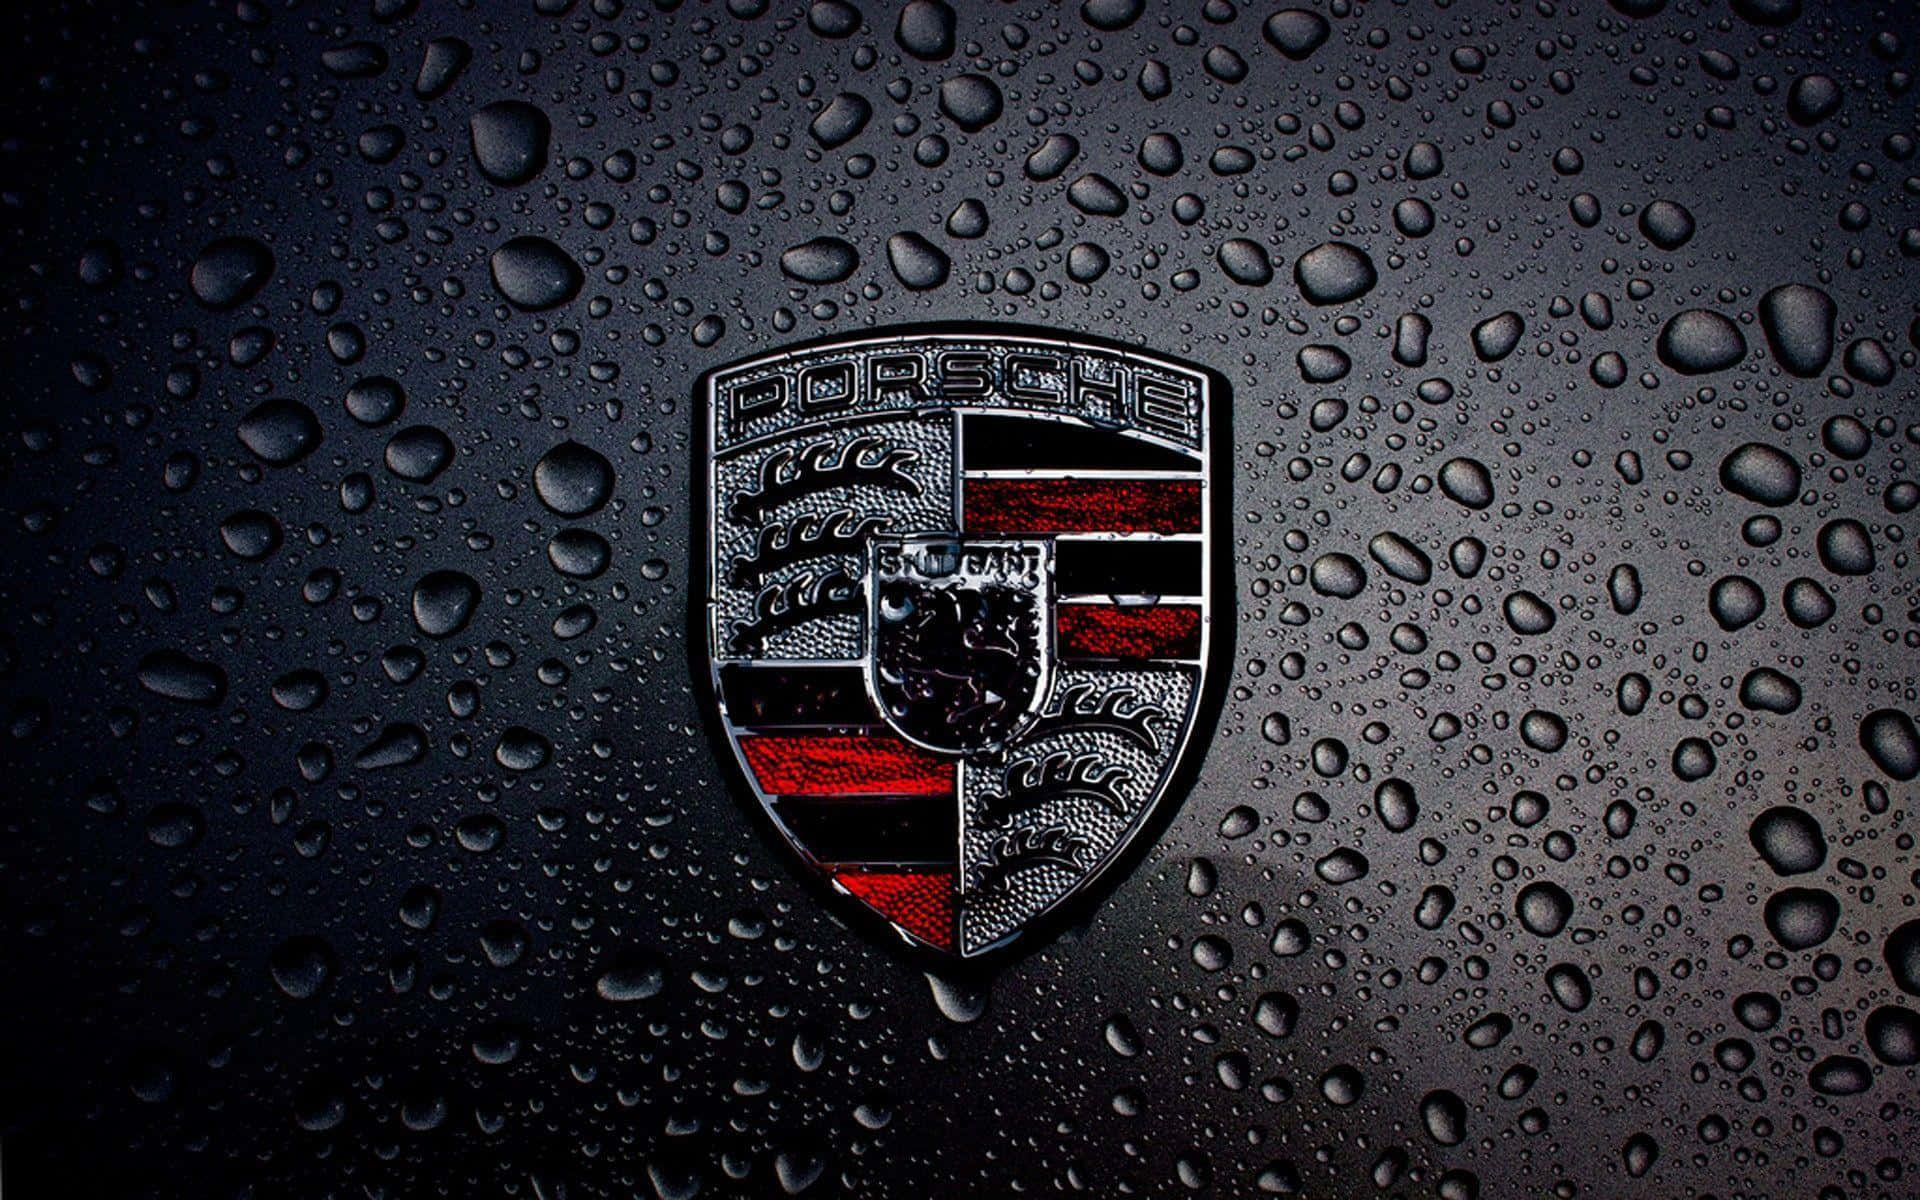 Porsche Logo On A Black Car With Rain Drops